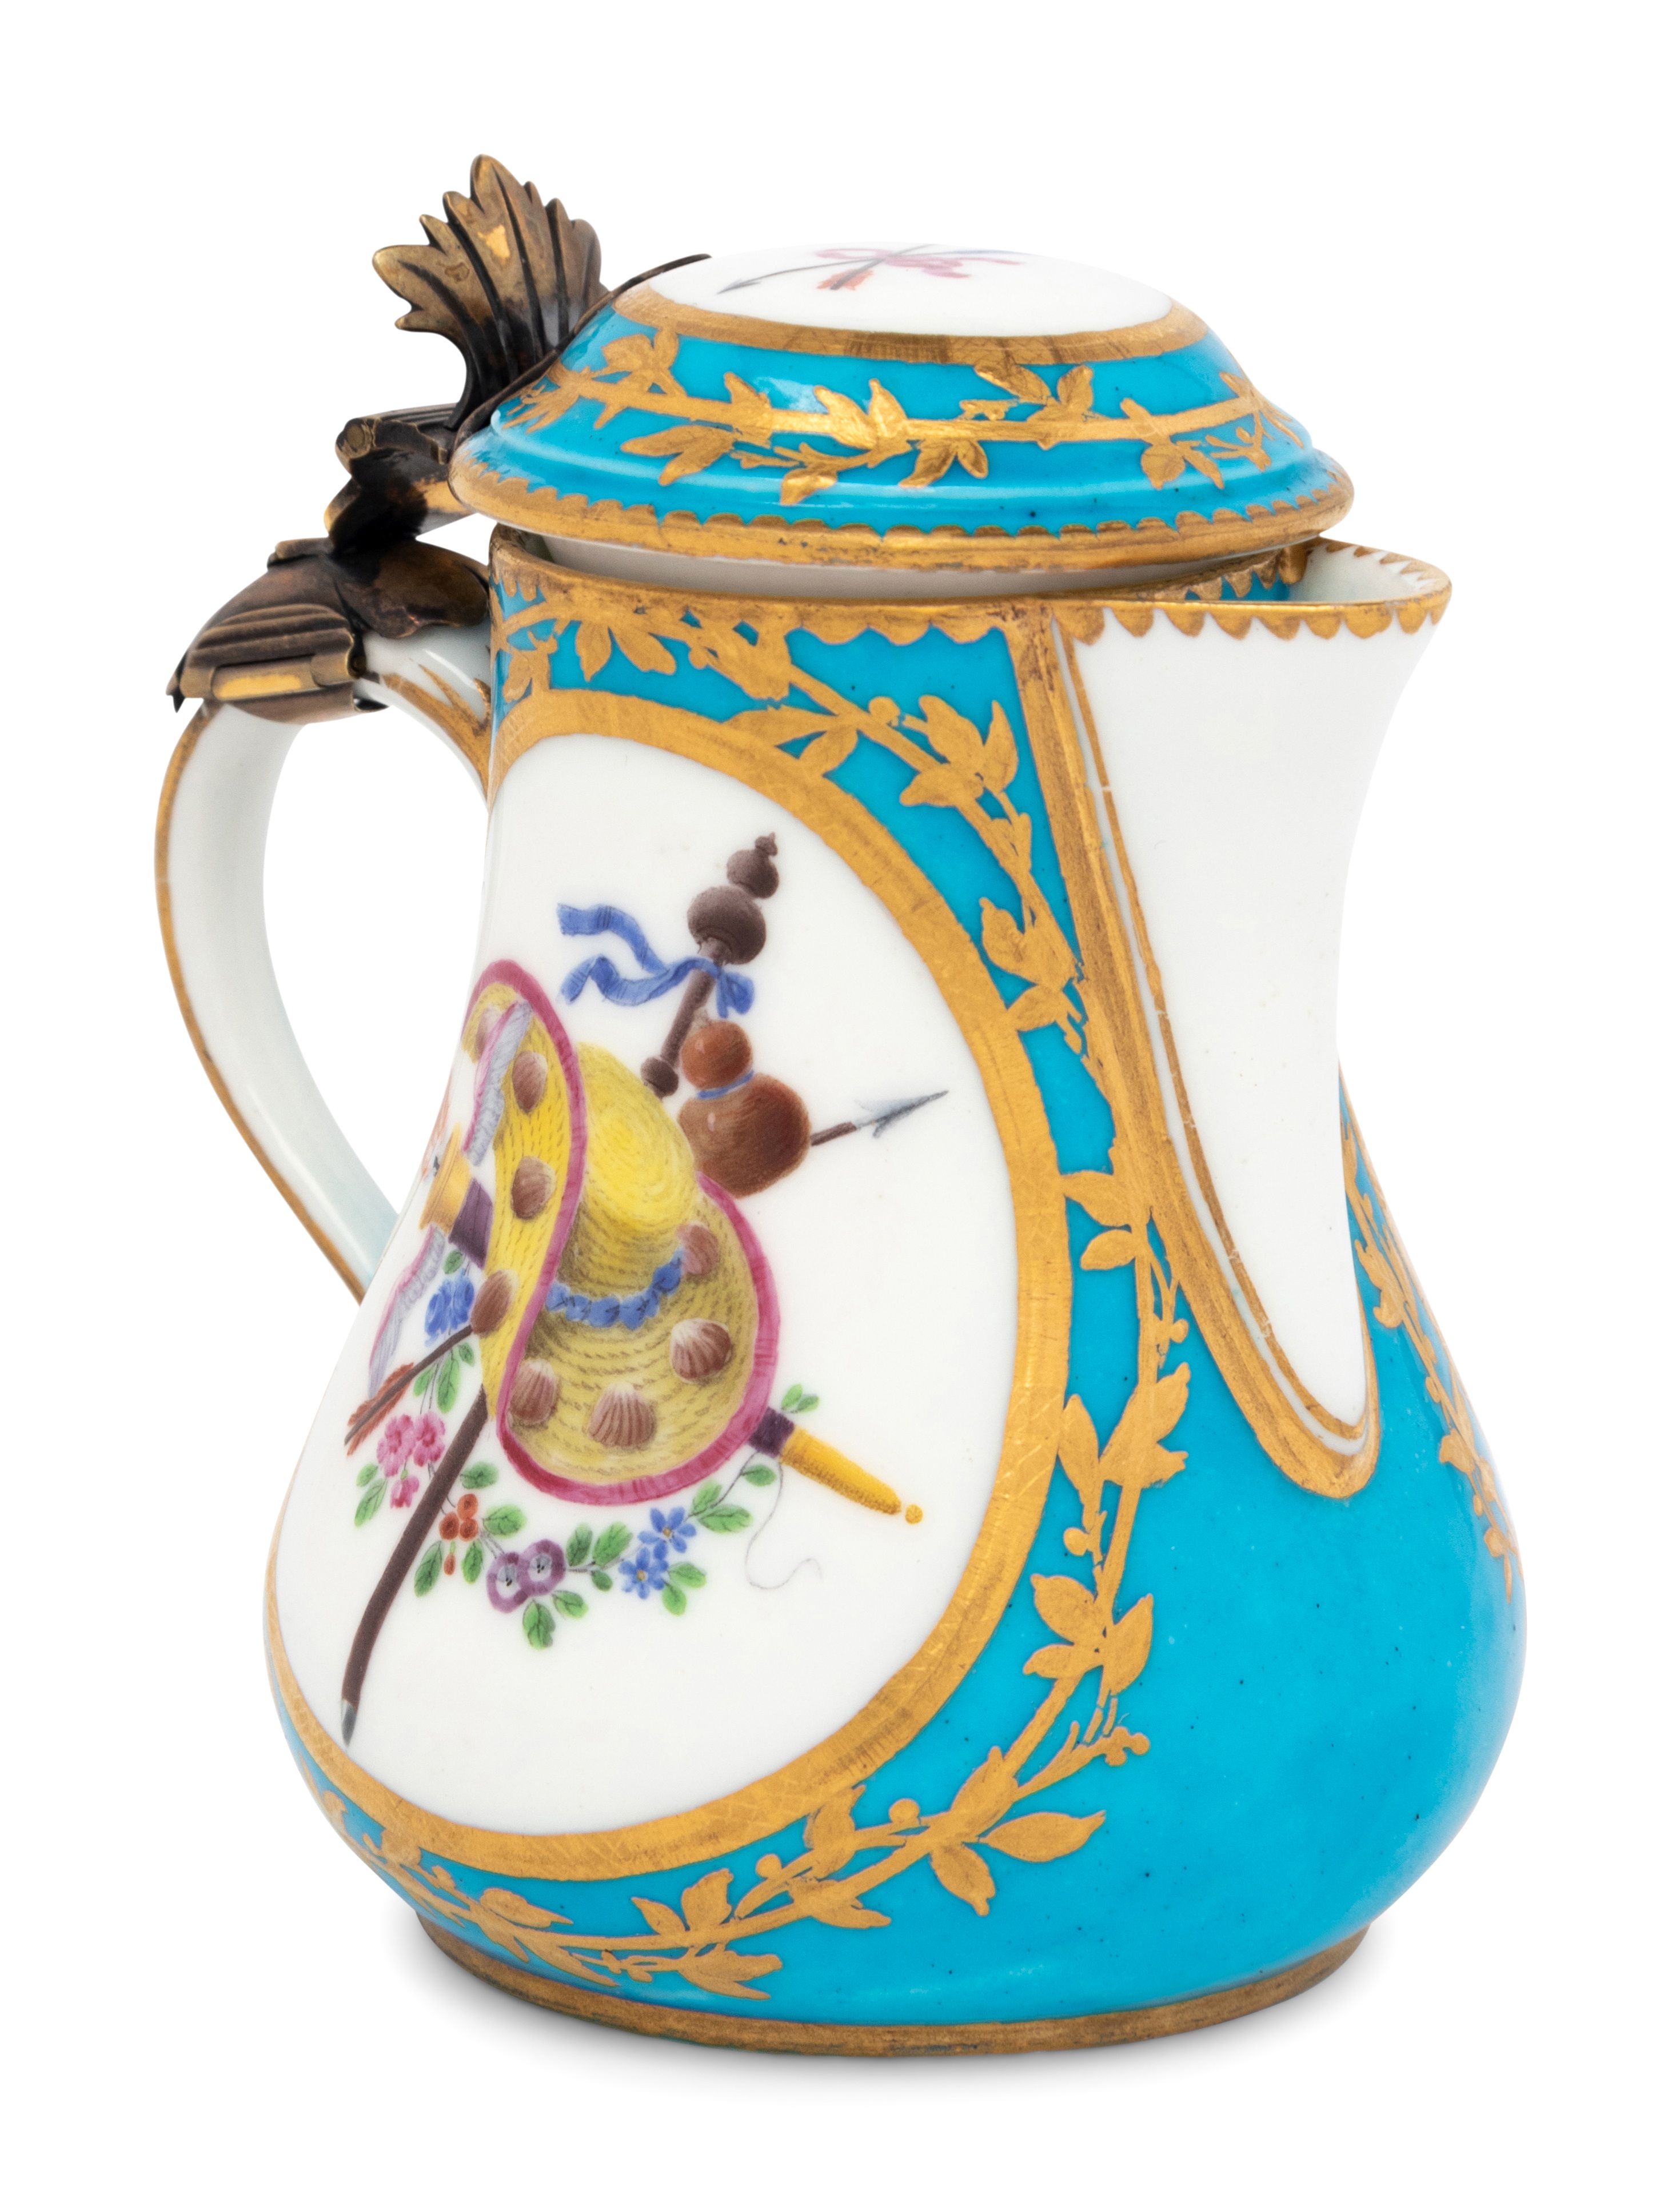 A Sevres Silver-Gilt Mounted Bleu Celeste Porcelain Hot Milk Jug and Cover (Pot a Lait 'Duvaux') - Image 10 of 29